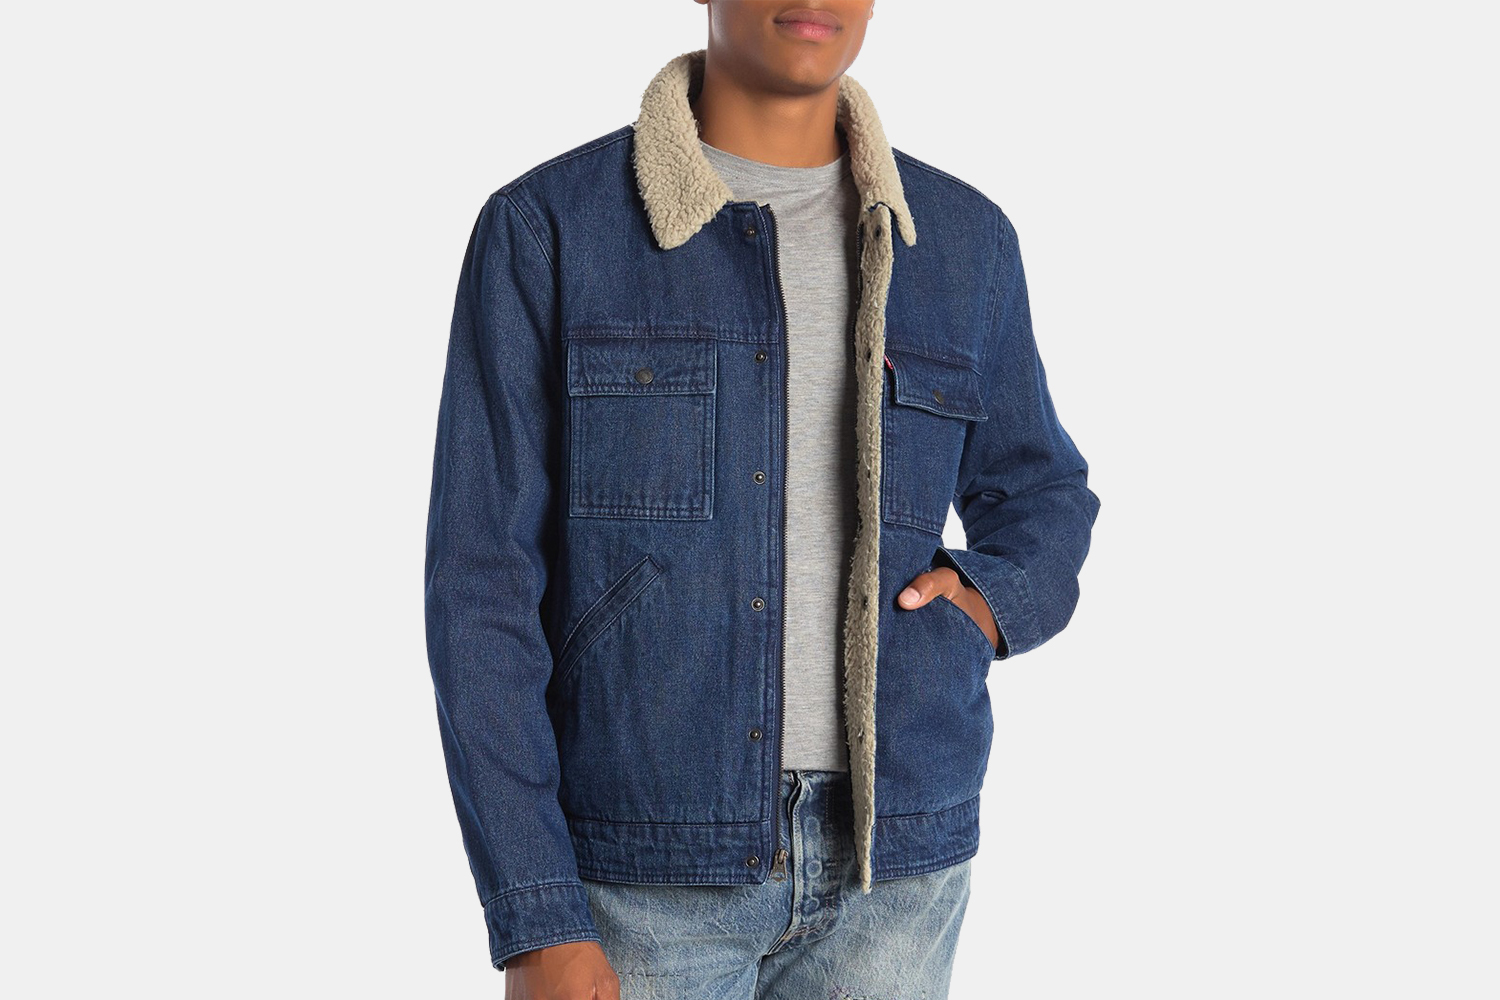 levi's sherpa lined jean jacket